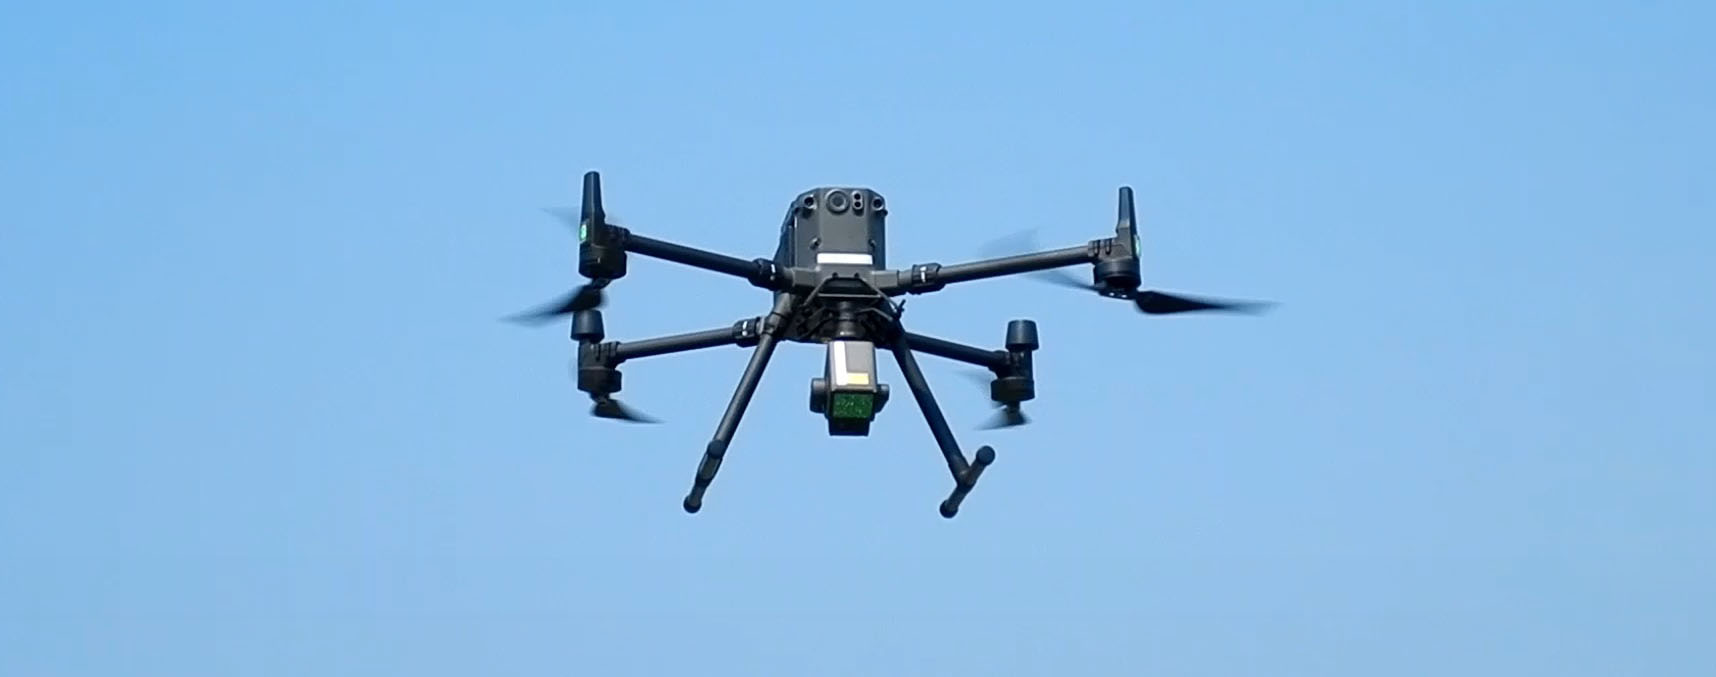 UAV（Unmanned Aerial Vehicle：無人航空機、ドローン）